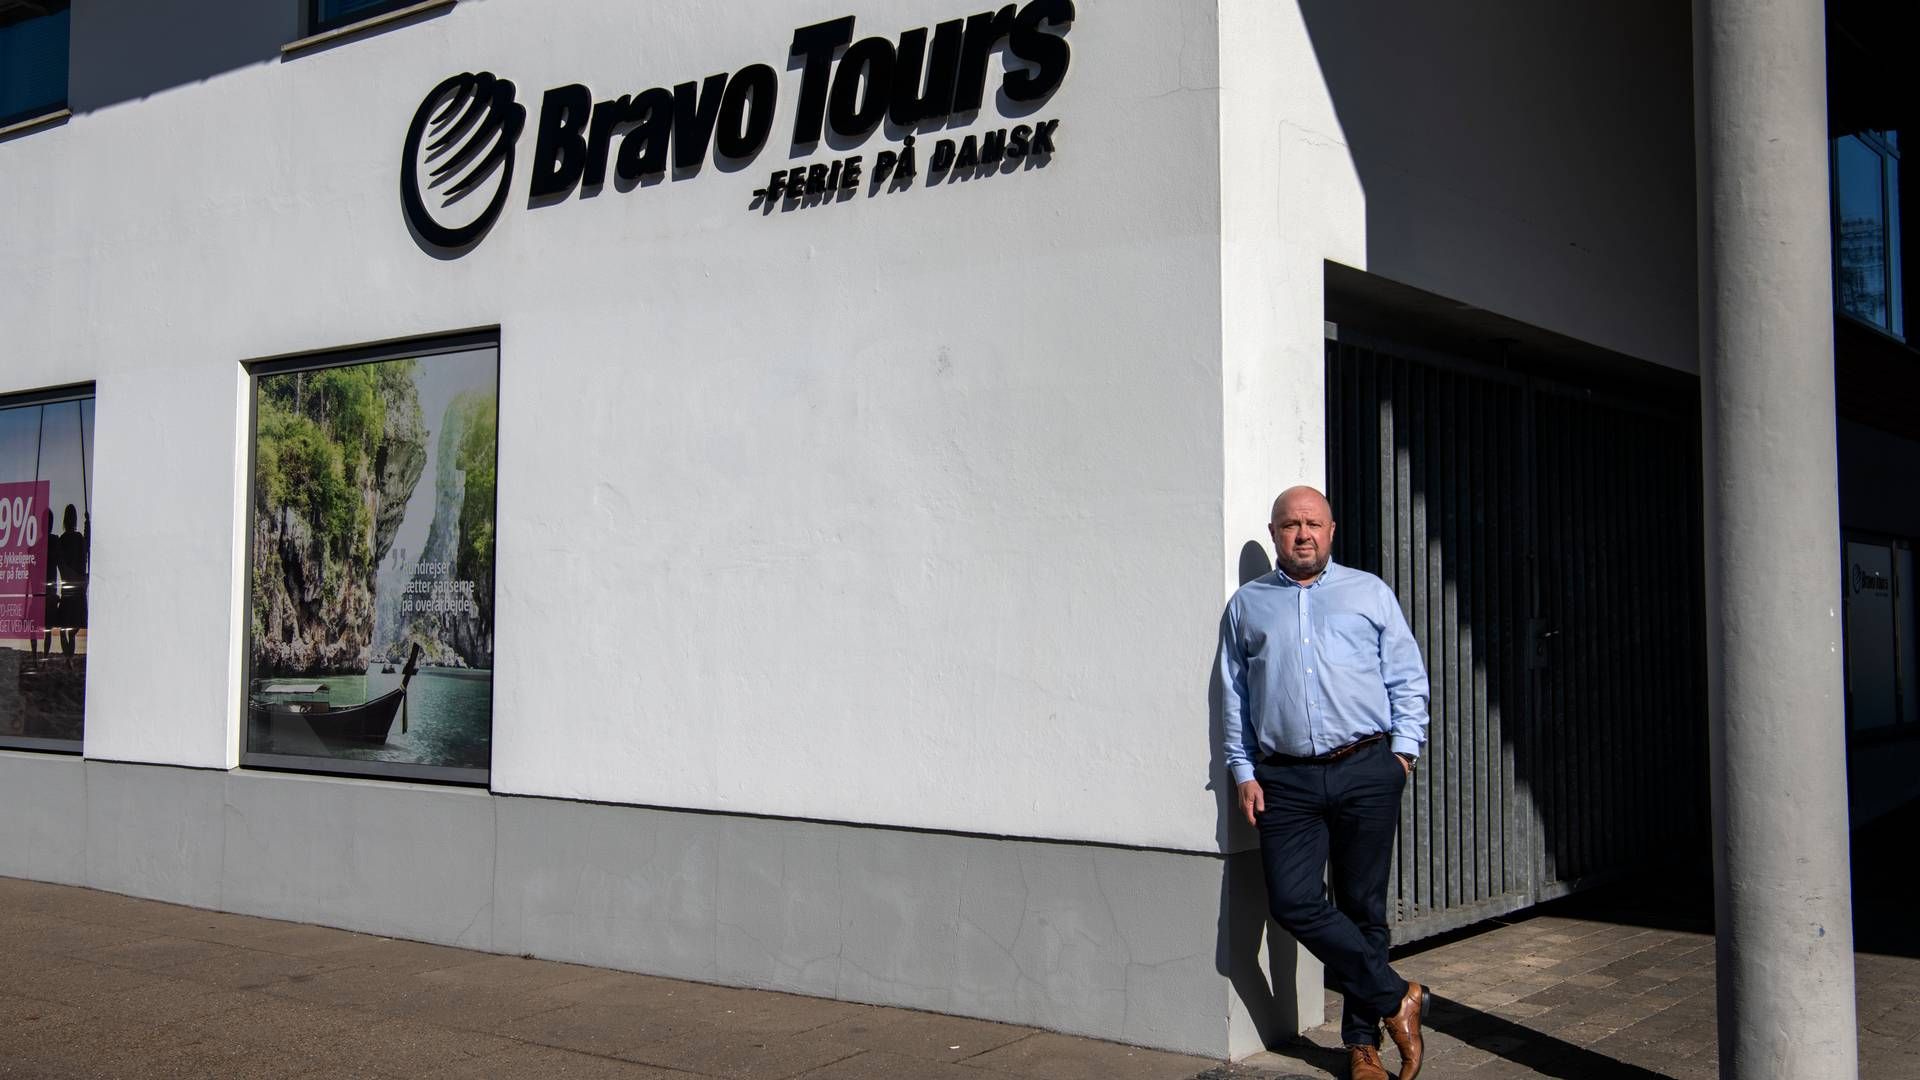 Bravo Tours blev stiftet i 1998. Siden starten har Peder Hornshøj siddet som direktør, og det ventes han fortsat at gøre i den nye konstellation. | Foto: Marie Ravn